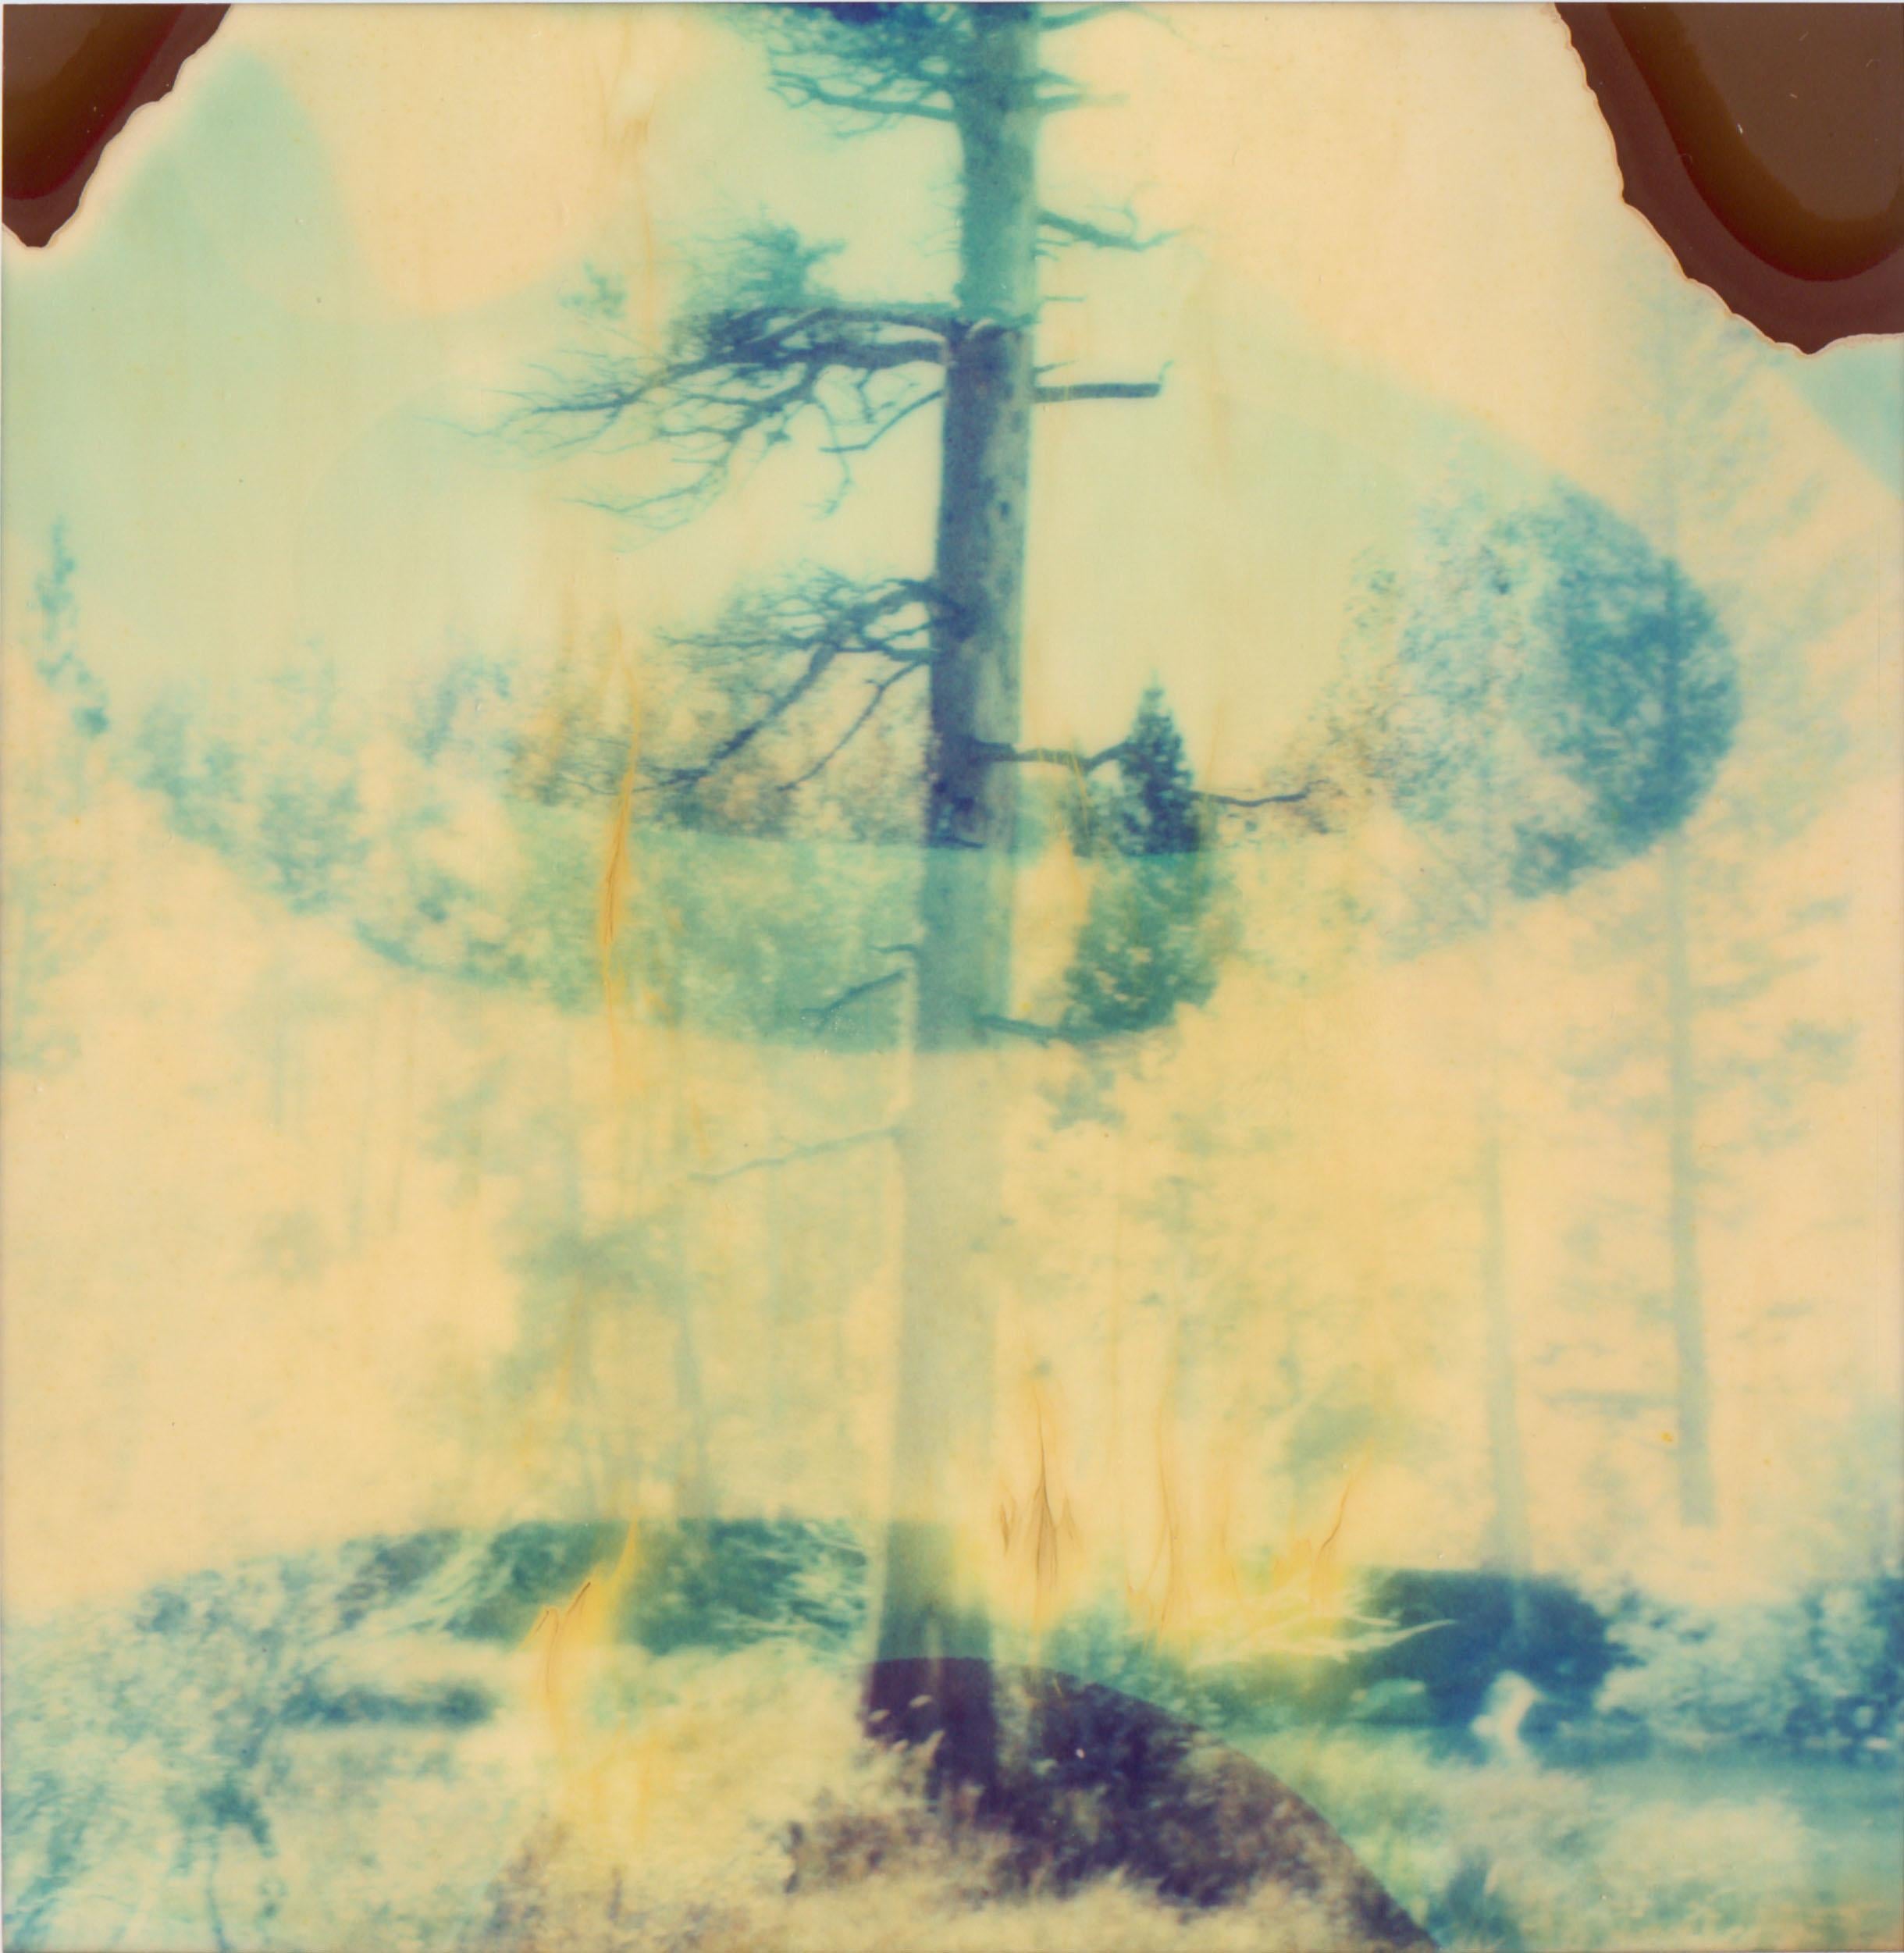 Stefanie Schneider Color Photograph - Contemporary, Abstract, Landscape, Polaroid, expired, Schneider, 21st Century